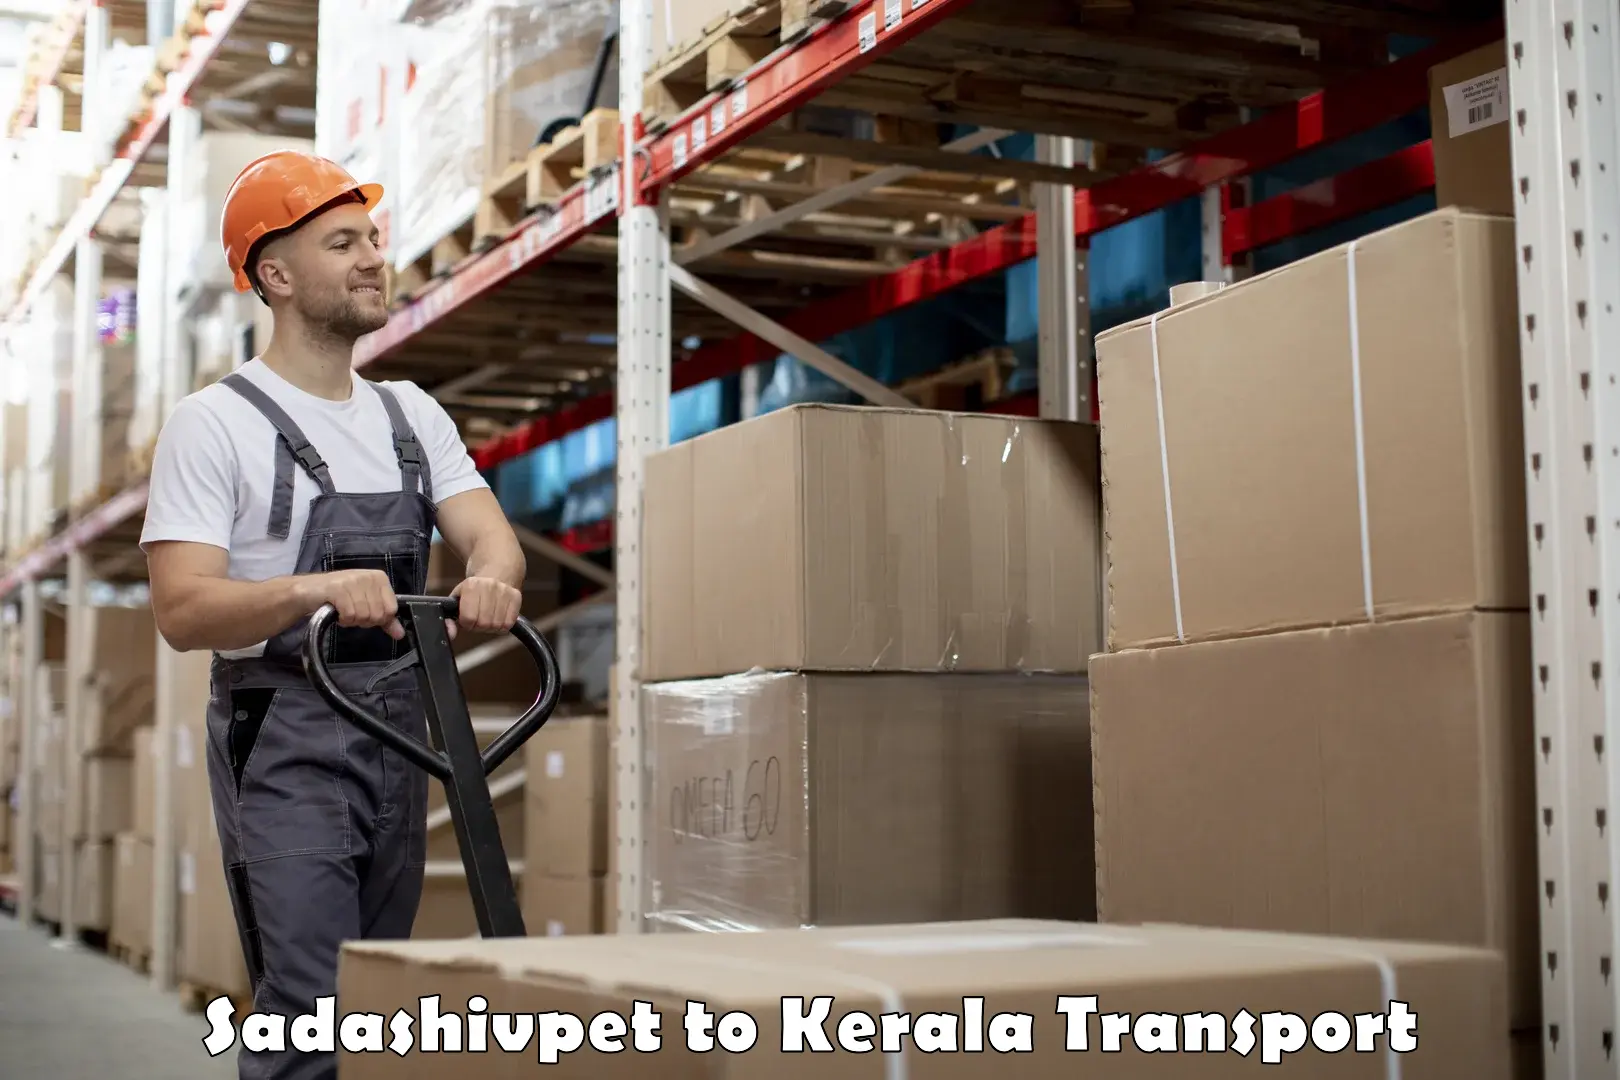 Transport in sharing Sadashivpet to Kuttikol